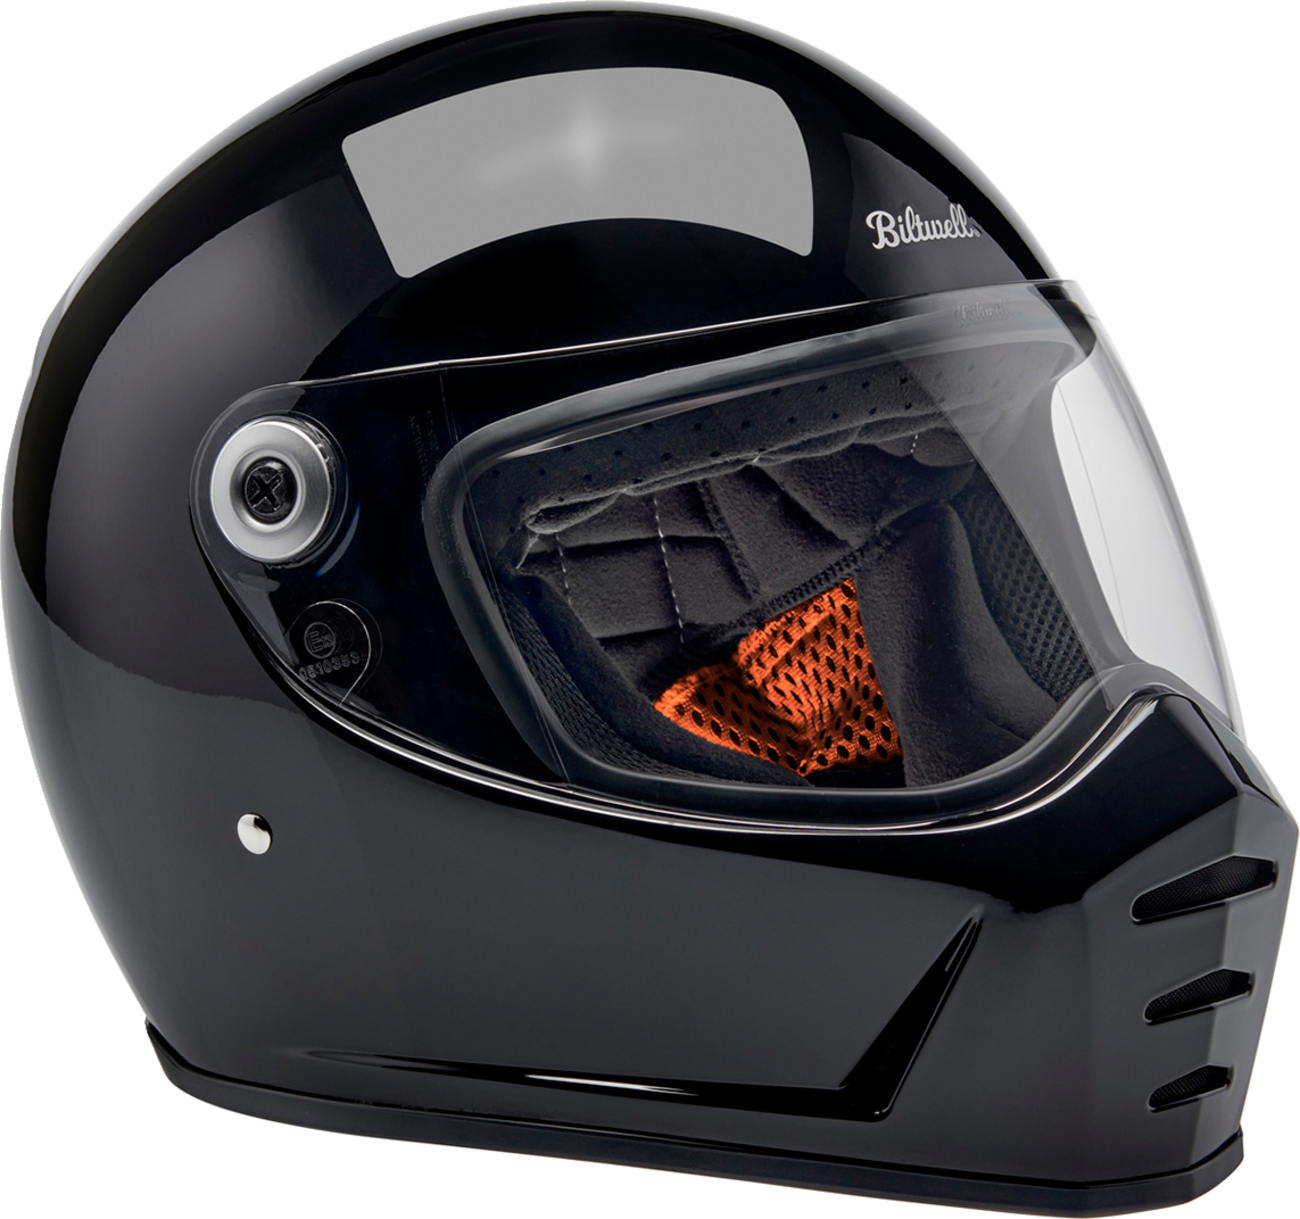 BILTWELL Lane Splitter Helmet - Gloss Black - XS 1004-101-501